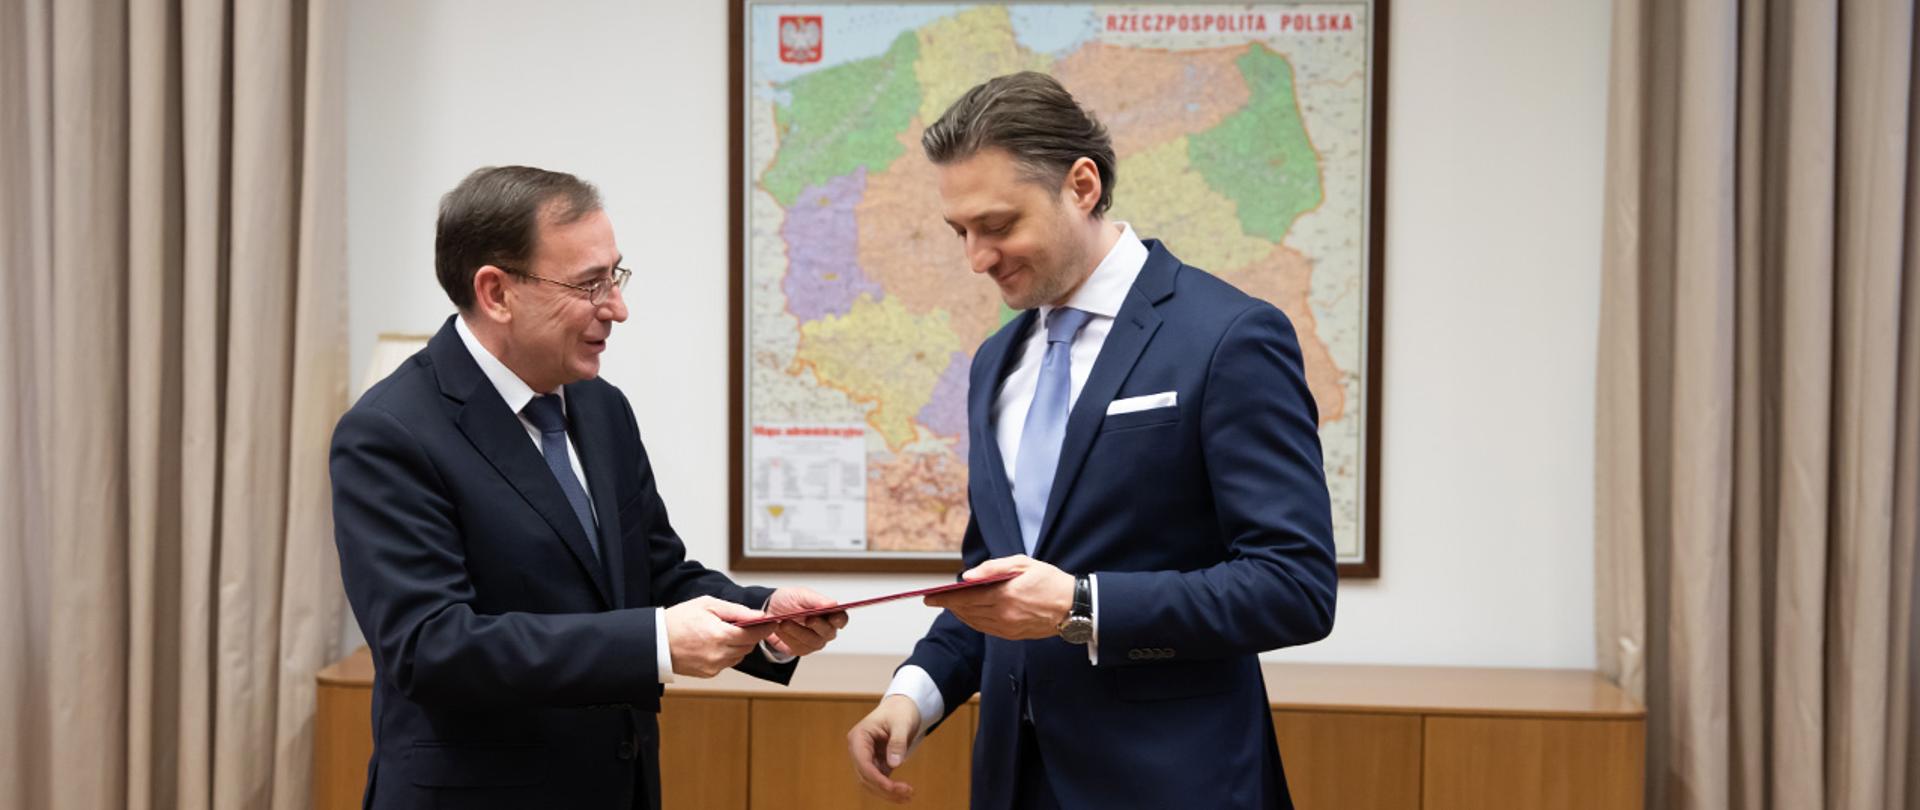 Na zdjęciu widać ministra Mariusza Kamińskiego wręczającego akt powołania na stanowisko wiceministra Bartoszowi Grodeckiemu. W tle widać mapę administracyjną Polski.